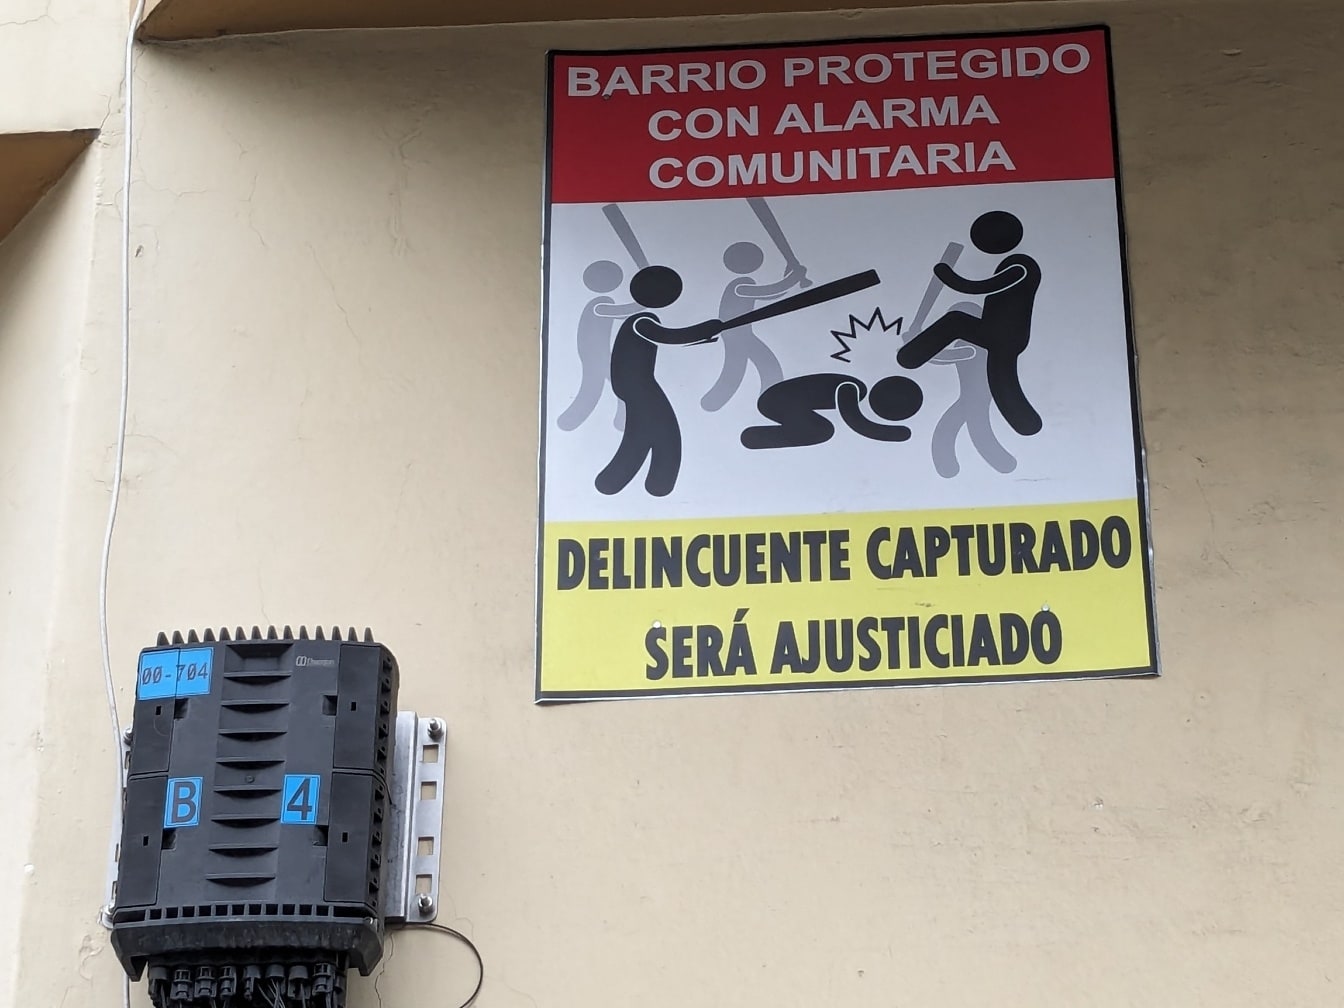 Señal de advertencia contra delincuentes y bandidos con una inscripción en español en la pared